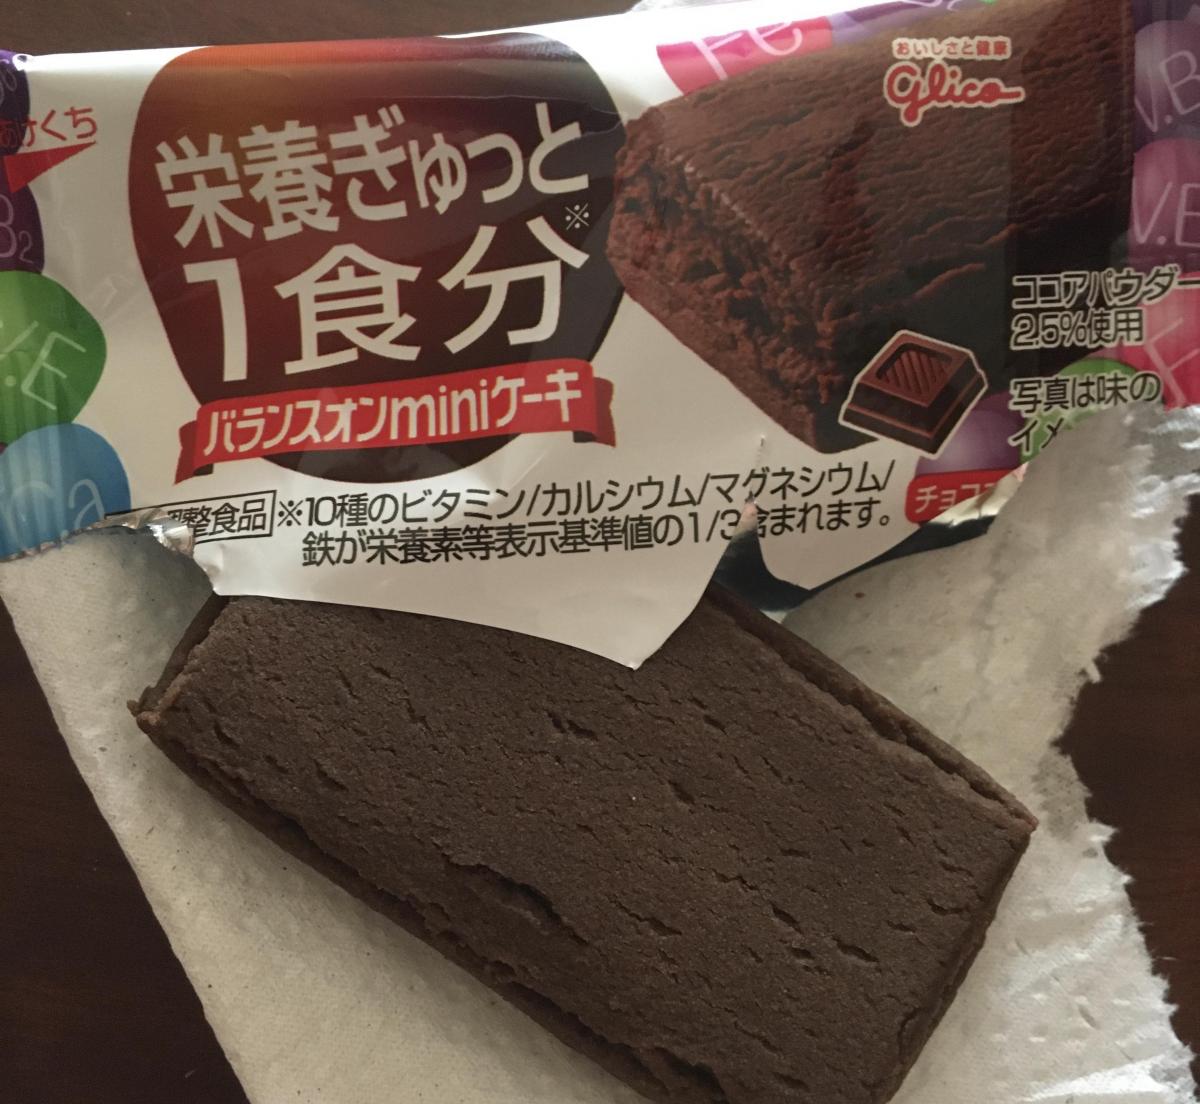 グリコ バランスオンminiケーキ チョコブラウニーの商品ページ